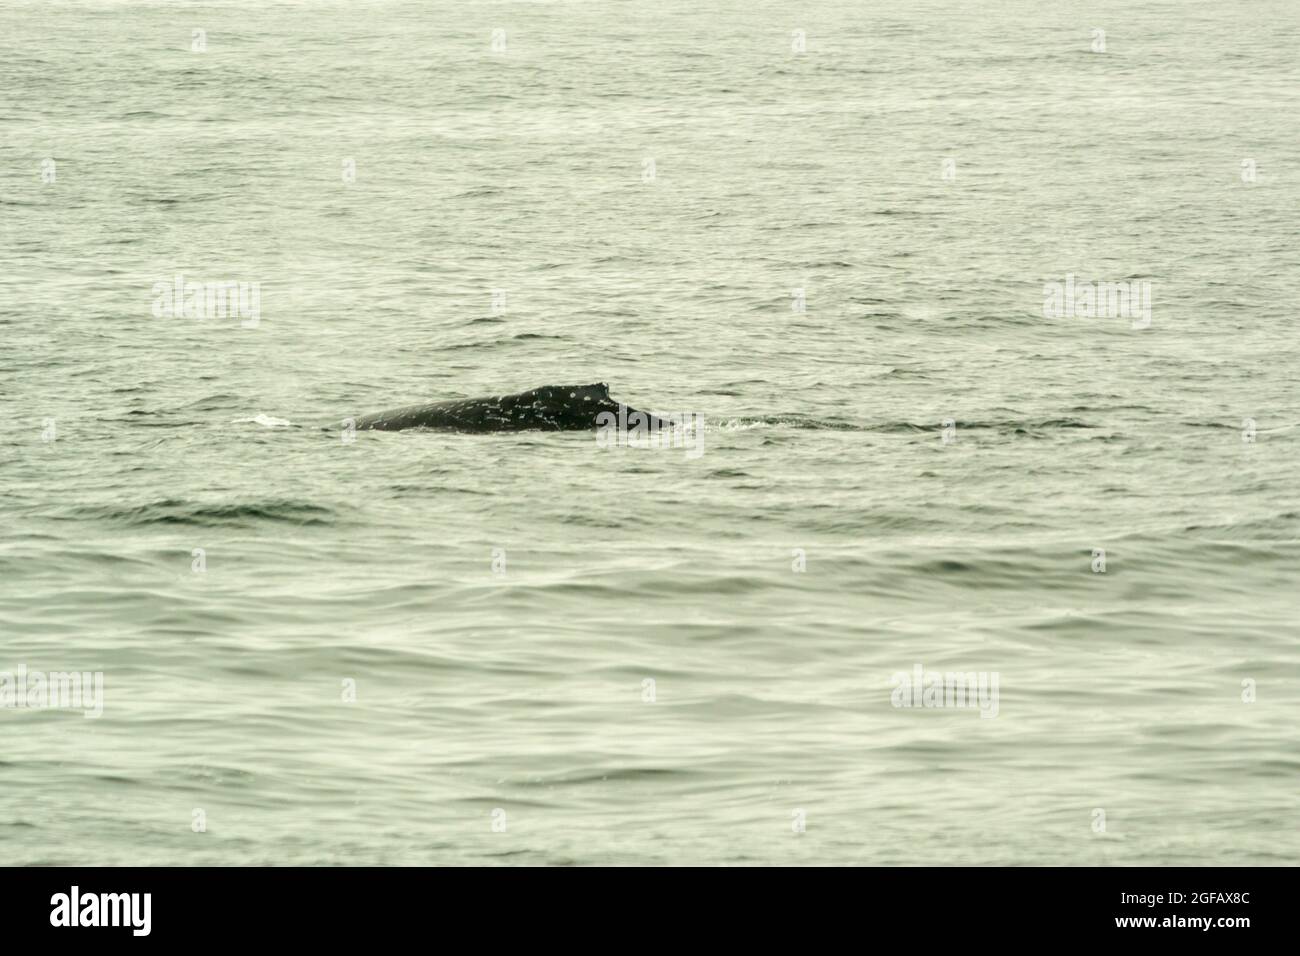 Buckel eines wilden Buckelwals, der im August in Monterey Bay, Kalifornien, im Pazifik schwimmt. Bewölktes Wetter, grauer Himmel und Meer. Stockfoto